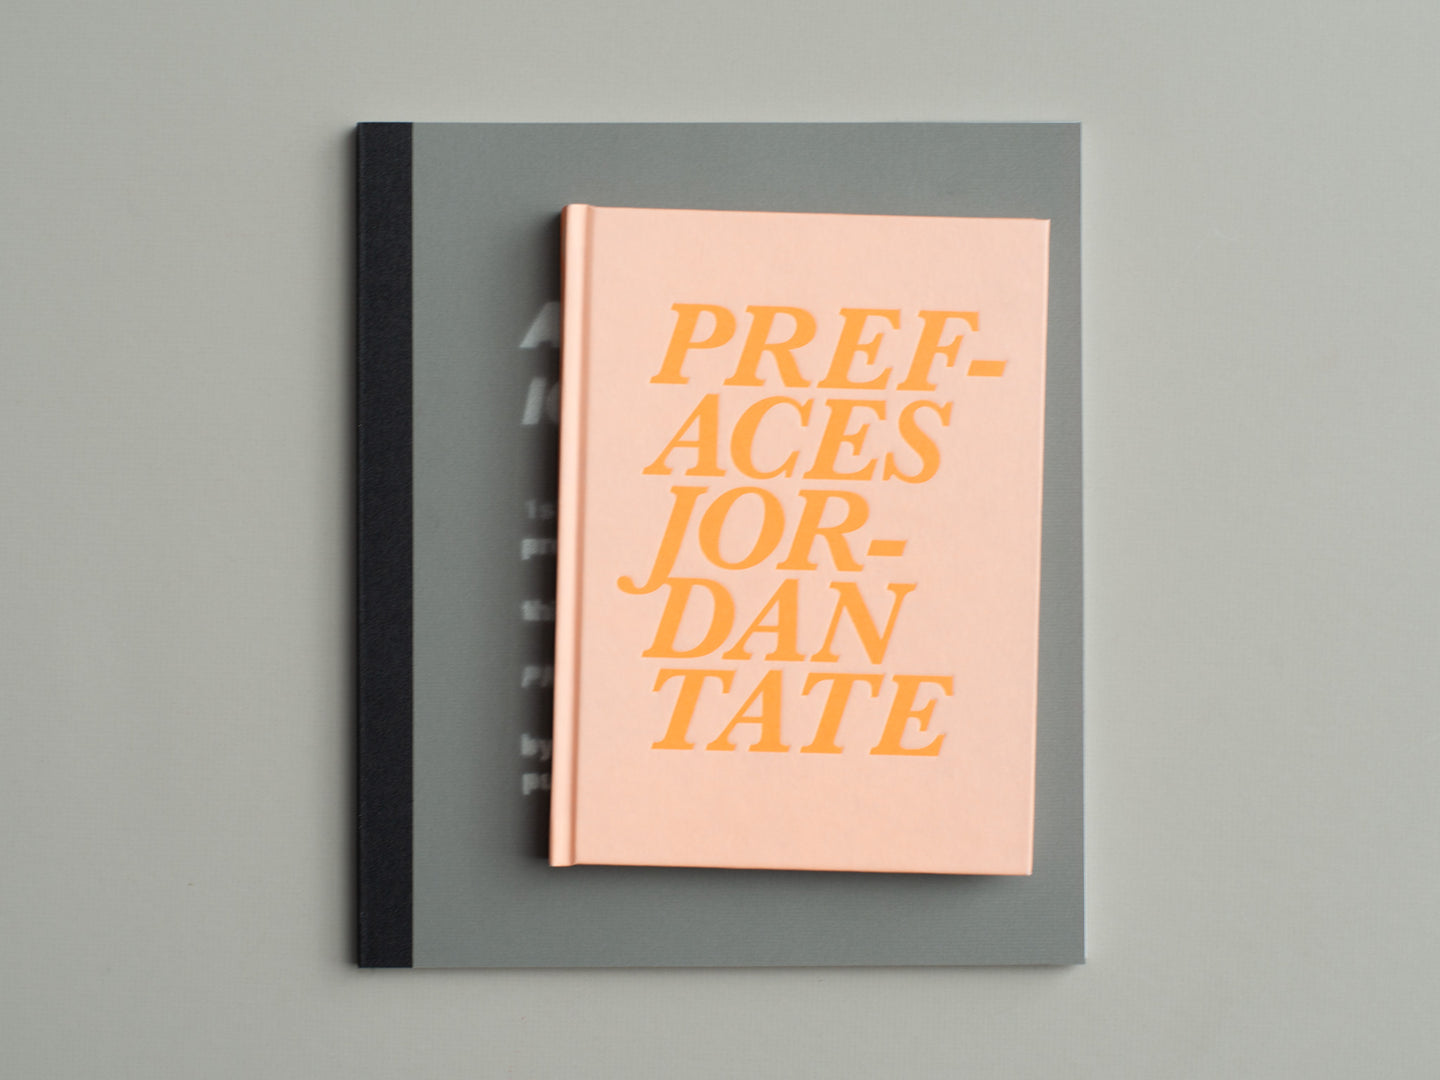 Prefaces by Jordan Tate